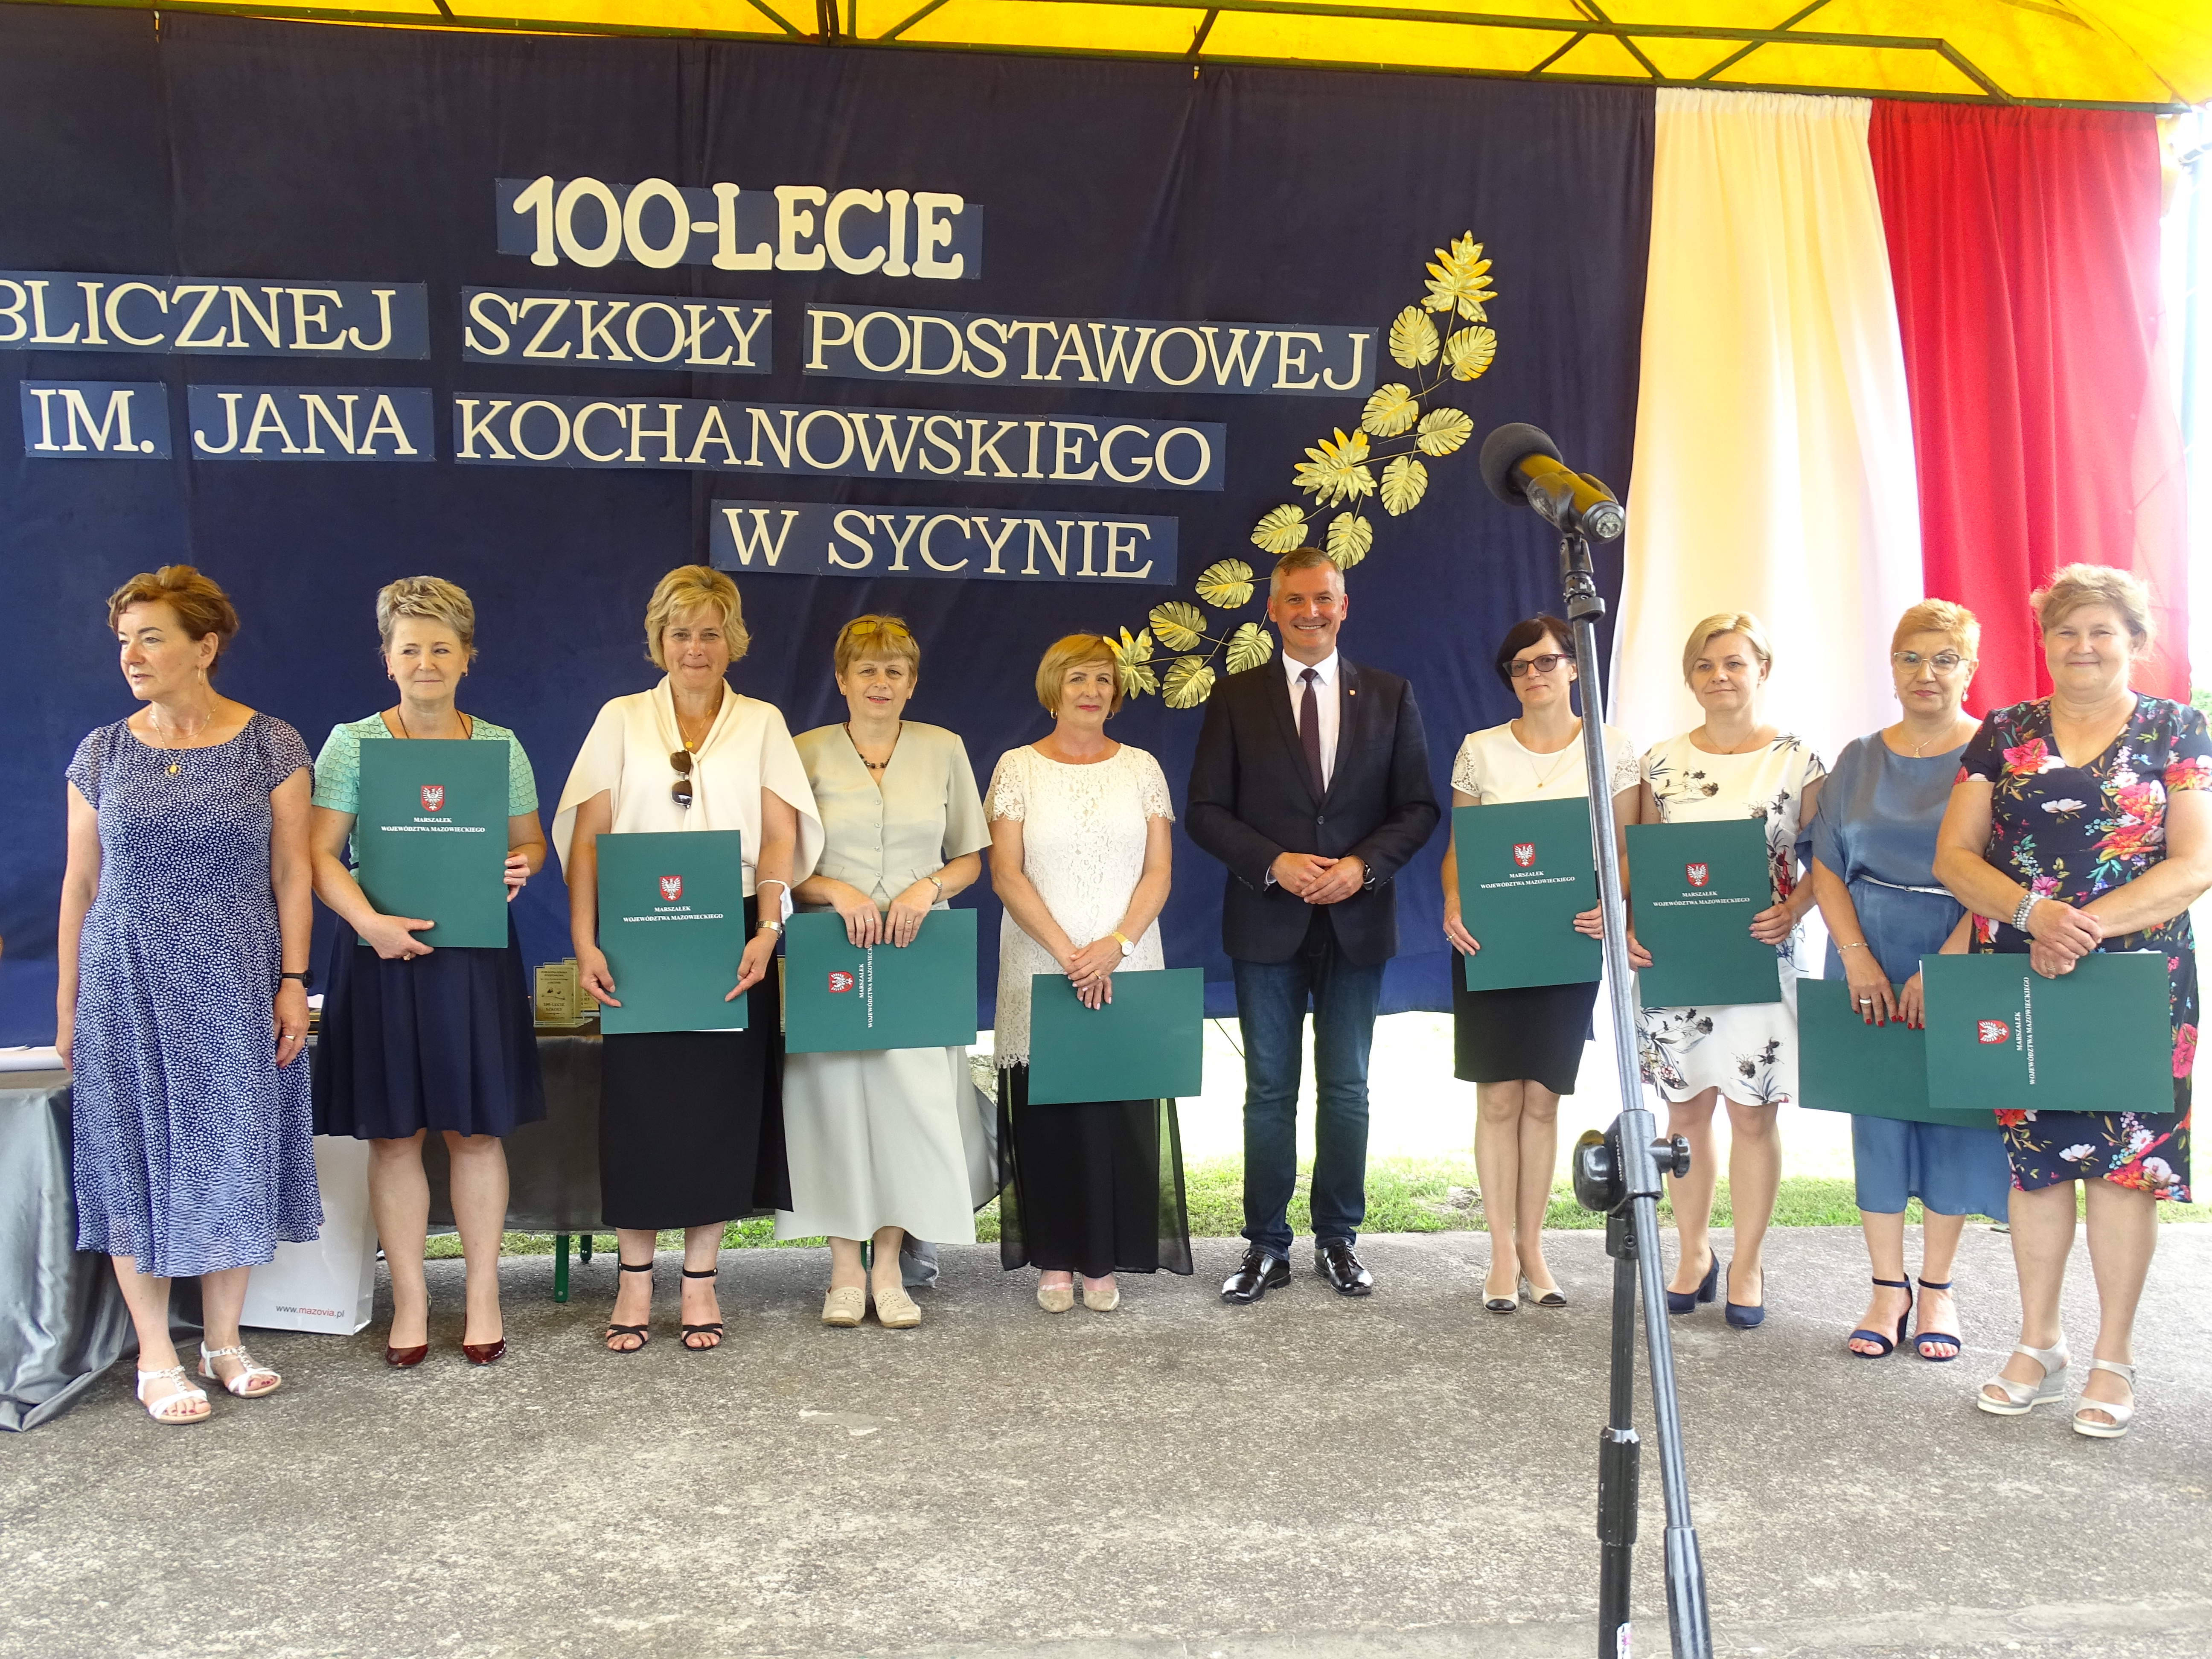 Indywidualnymi wyróżnieniami w postaci dyplomów uznania od Marszałka Województwa Mazowieckiego zostali także uhonorowani nauczyciele, którzy w szkole w Sycynie przepracowali co najmniej 20 lat.